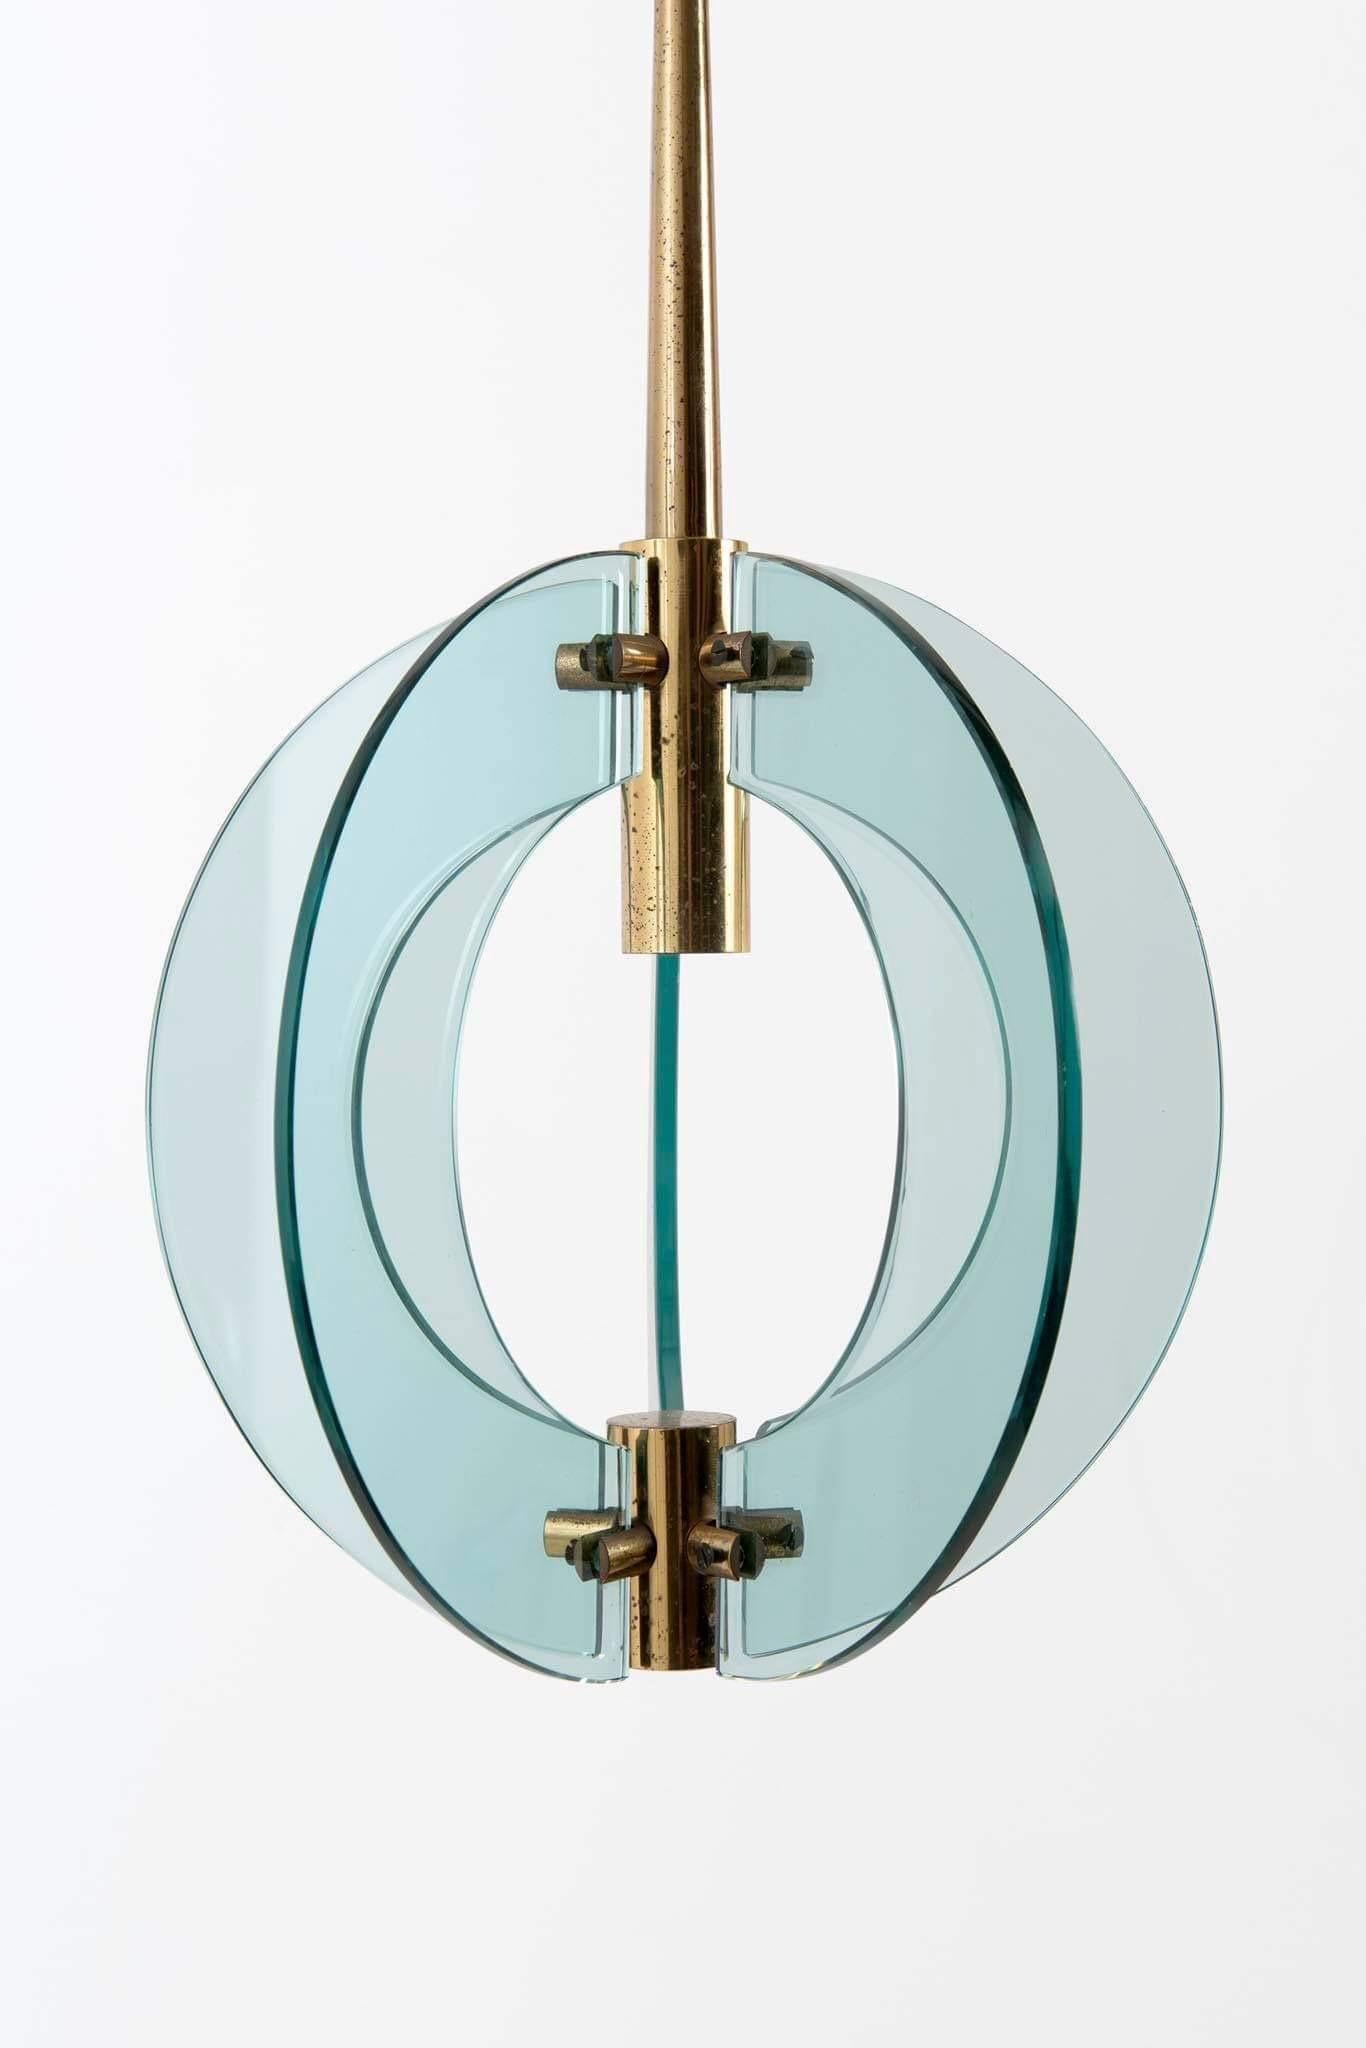 Suspension de Zero Quattro pour Fontana Arte, 1960

Ce lustre est composée de quatre plaques de verre soutenues par une structure en laiton, offrant un éclairage unique, typique des créations subtiles de Fontana Arte.